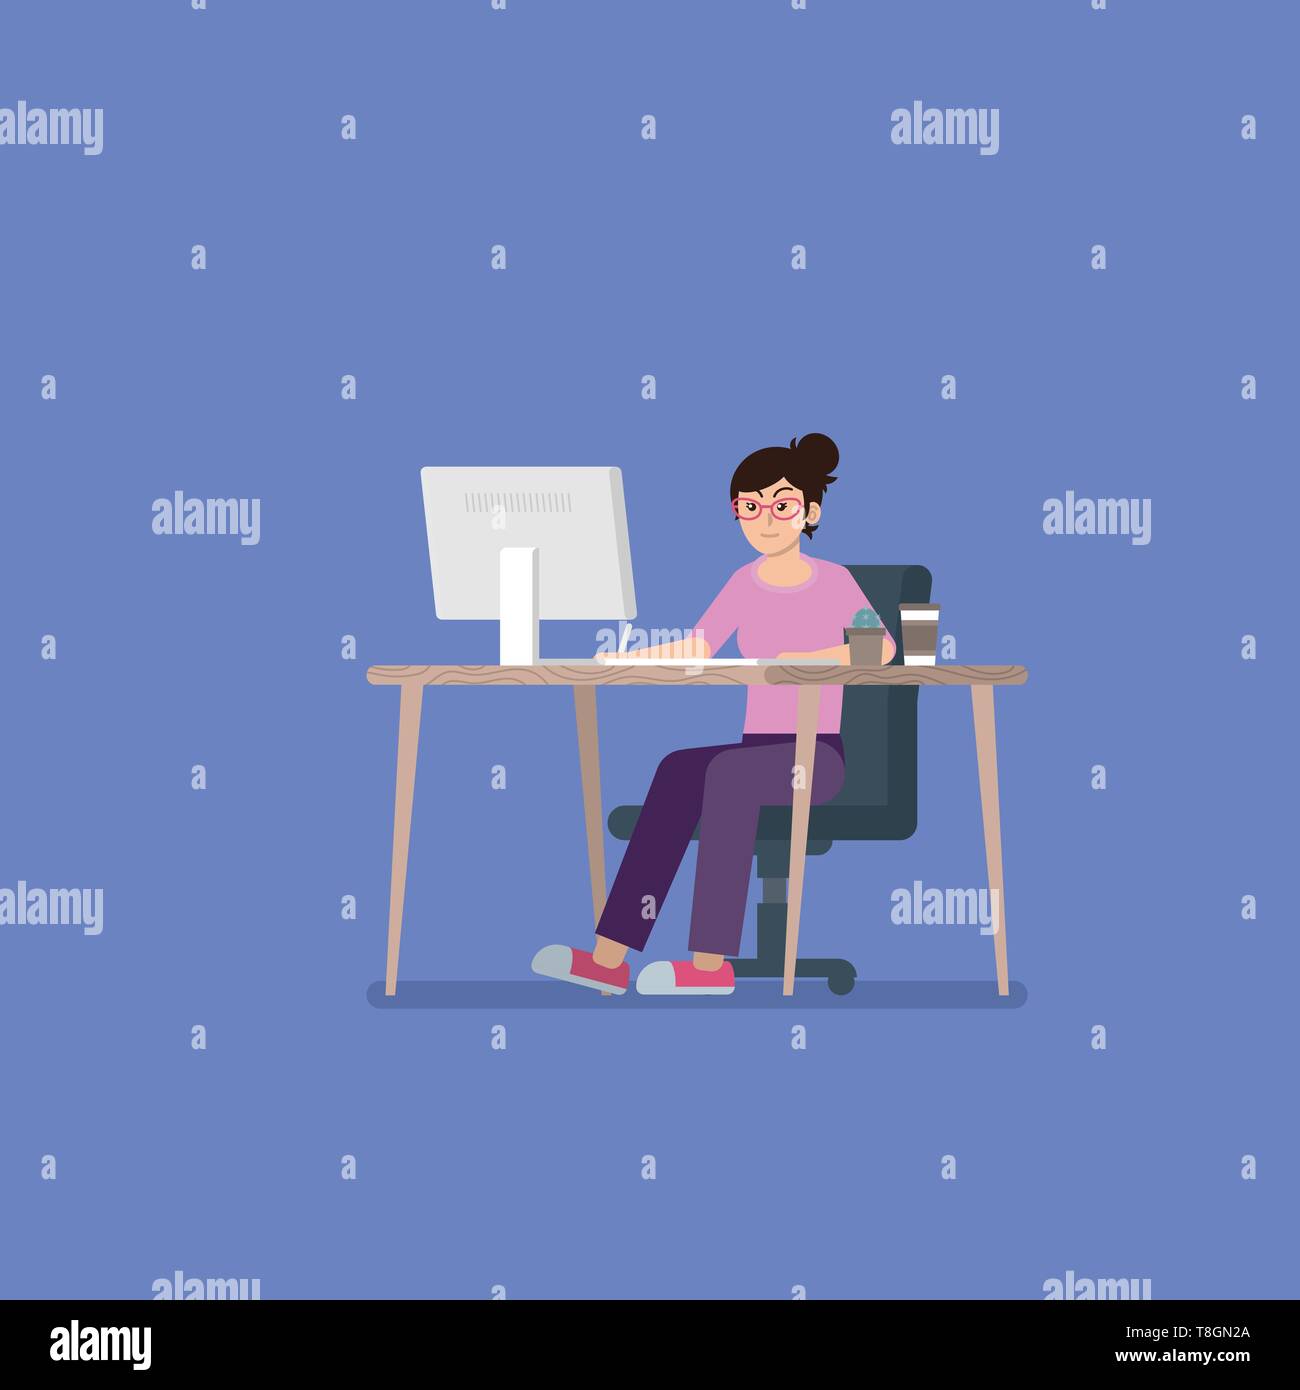 Jeune femme avec des lunettes dans les tenues de travailler sur ordinateur de bureau au bureau avec tablette, tasse de café et cactus en style plat Illustration de Vecteur